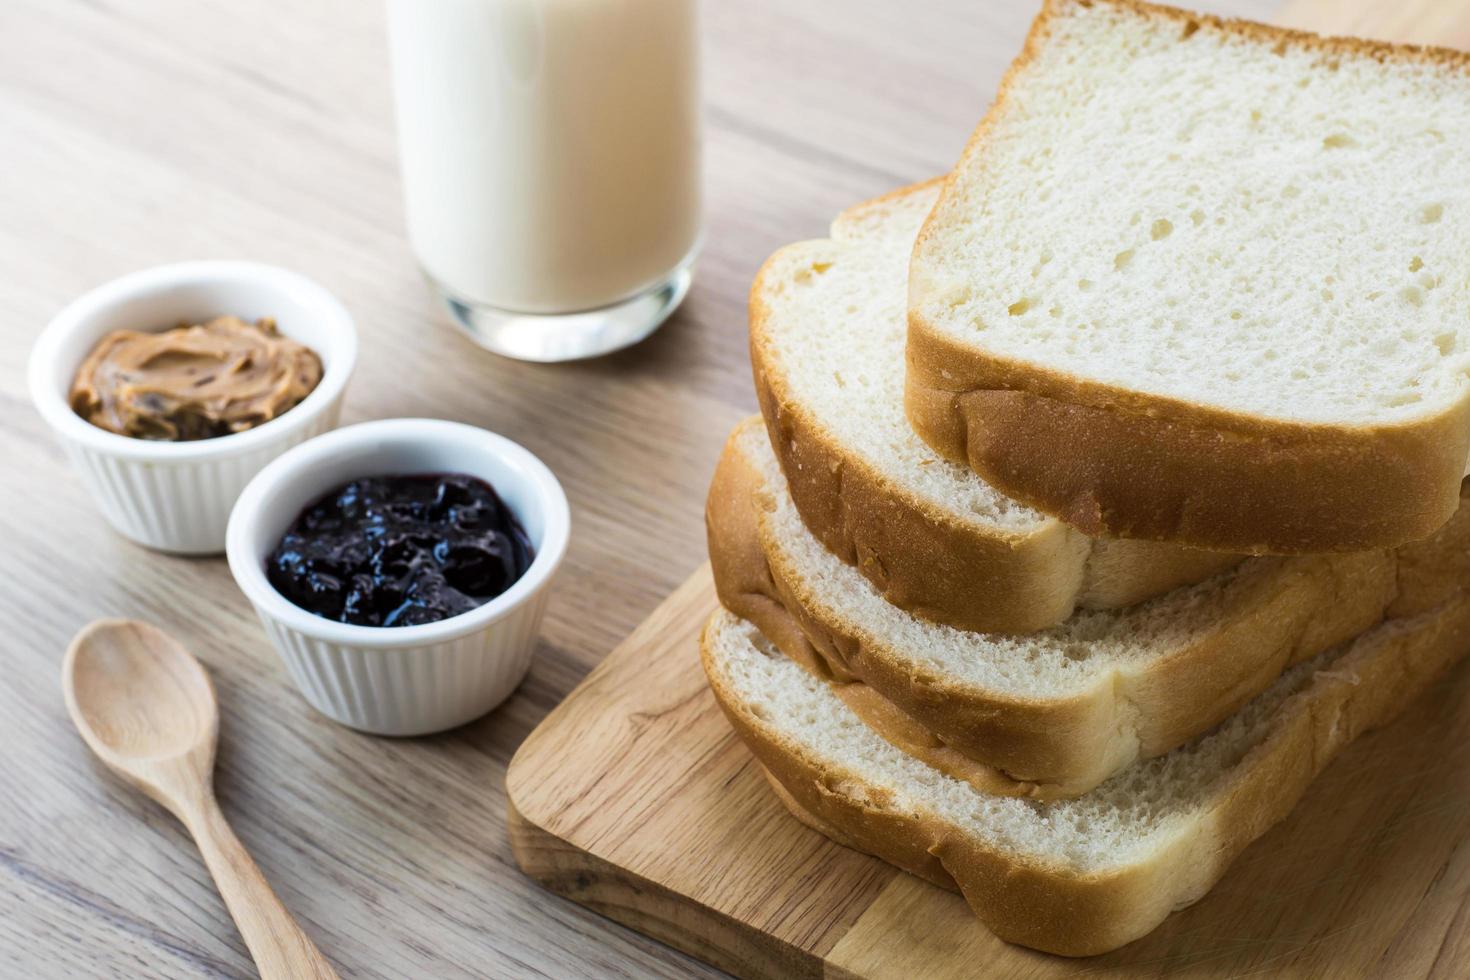 Tabla de madera con rebanadas de pan de desayuno con leche en la mesa de madera y mermelada de grosella negra y mantequilla de maní en la taza pequeña foto